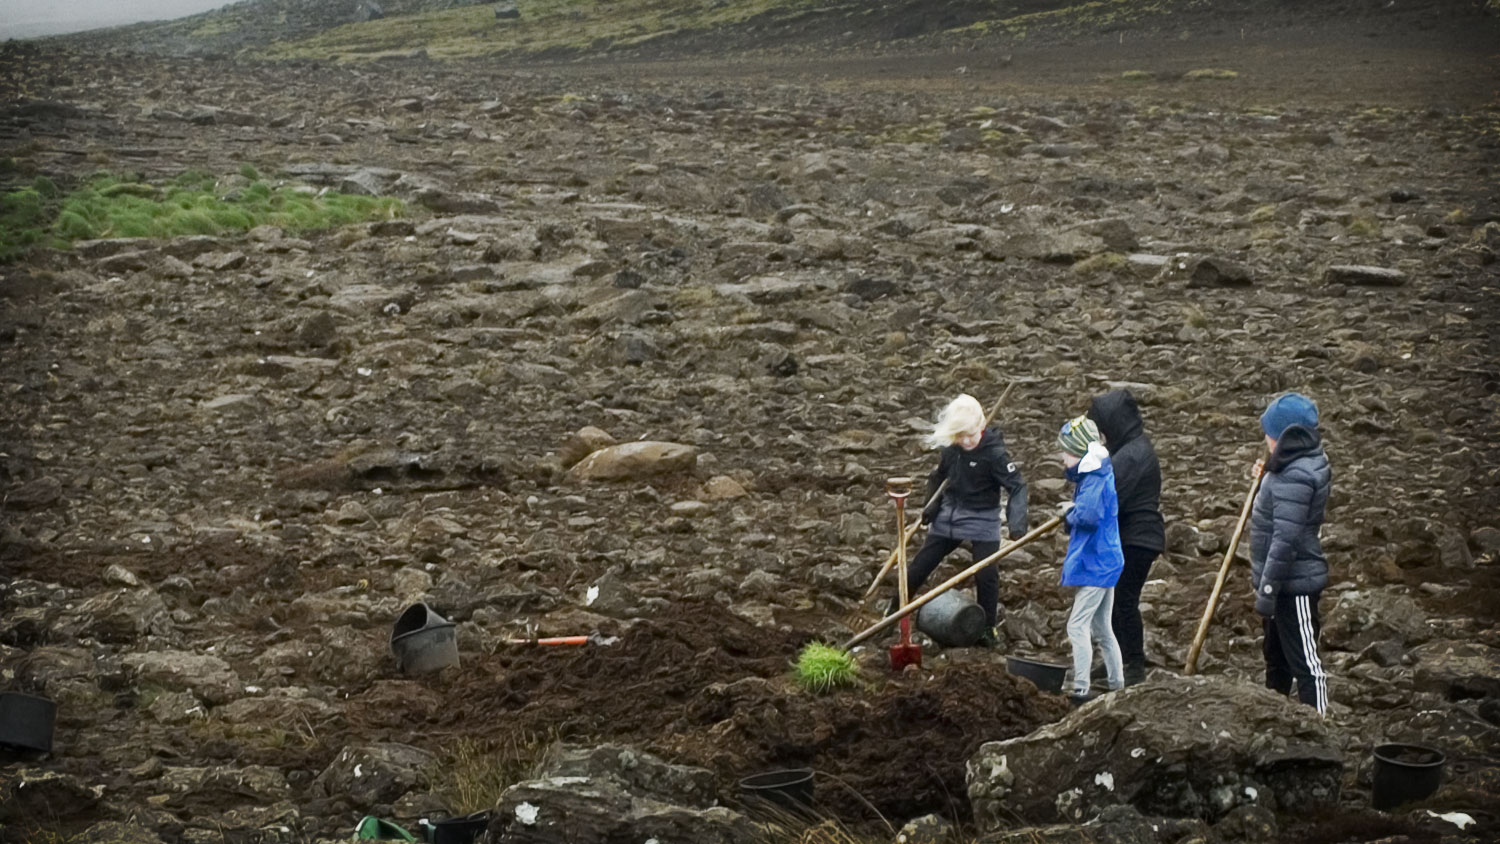 Four kids working on a stony field spreading fertilizer